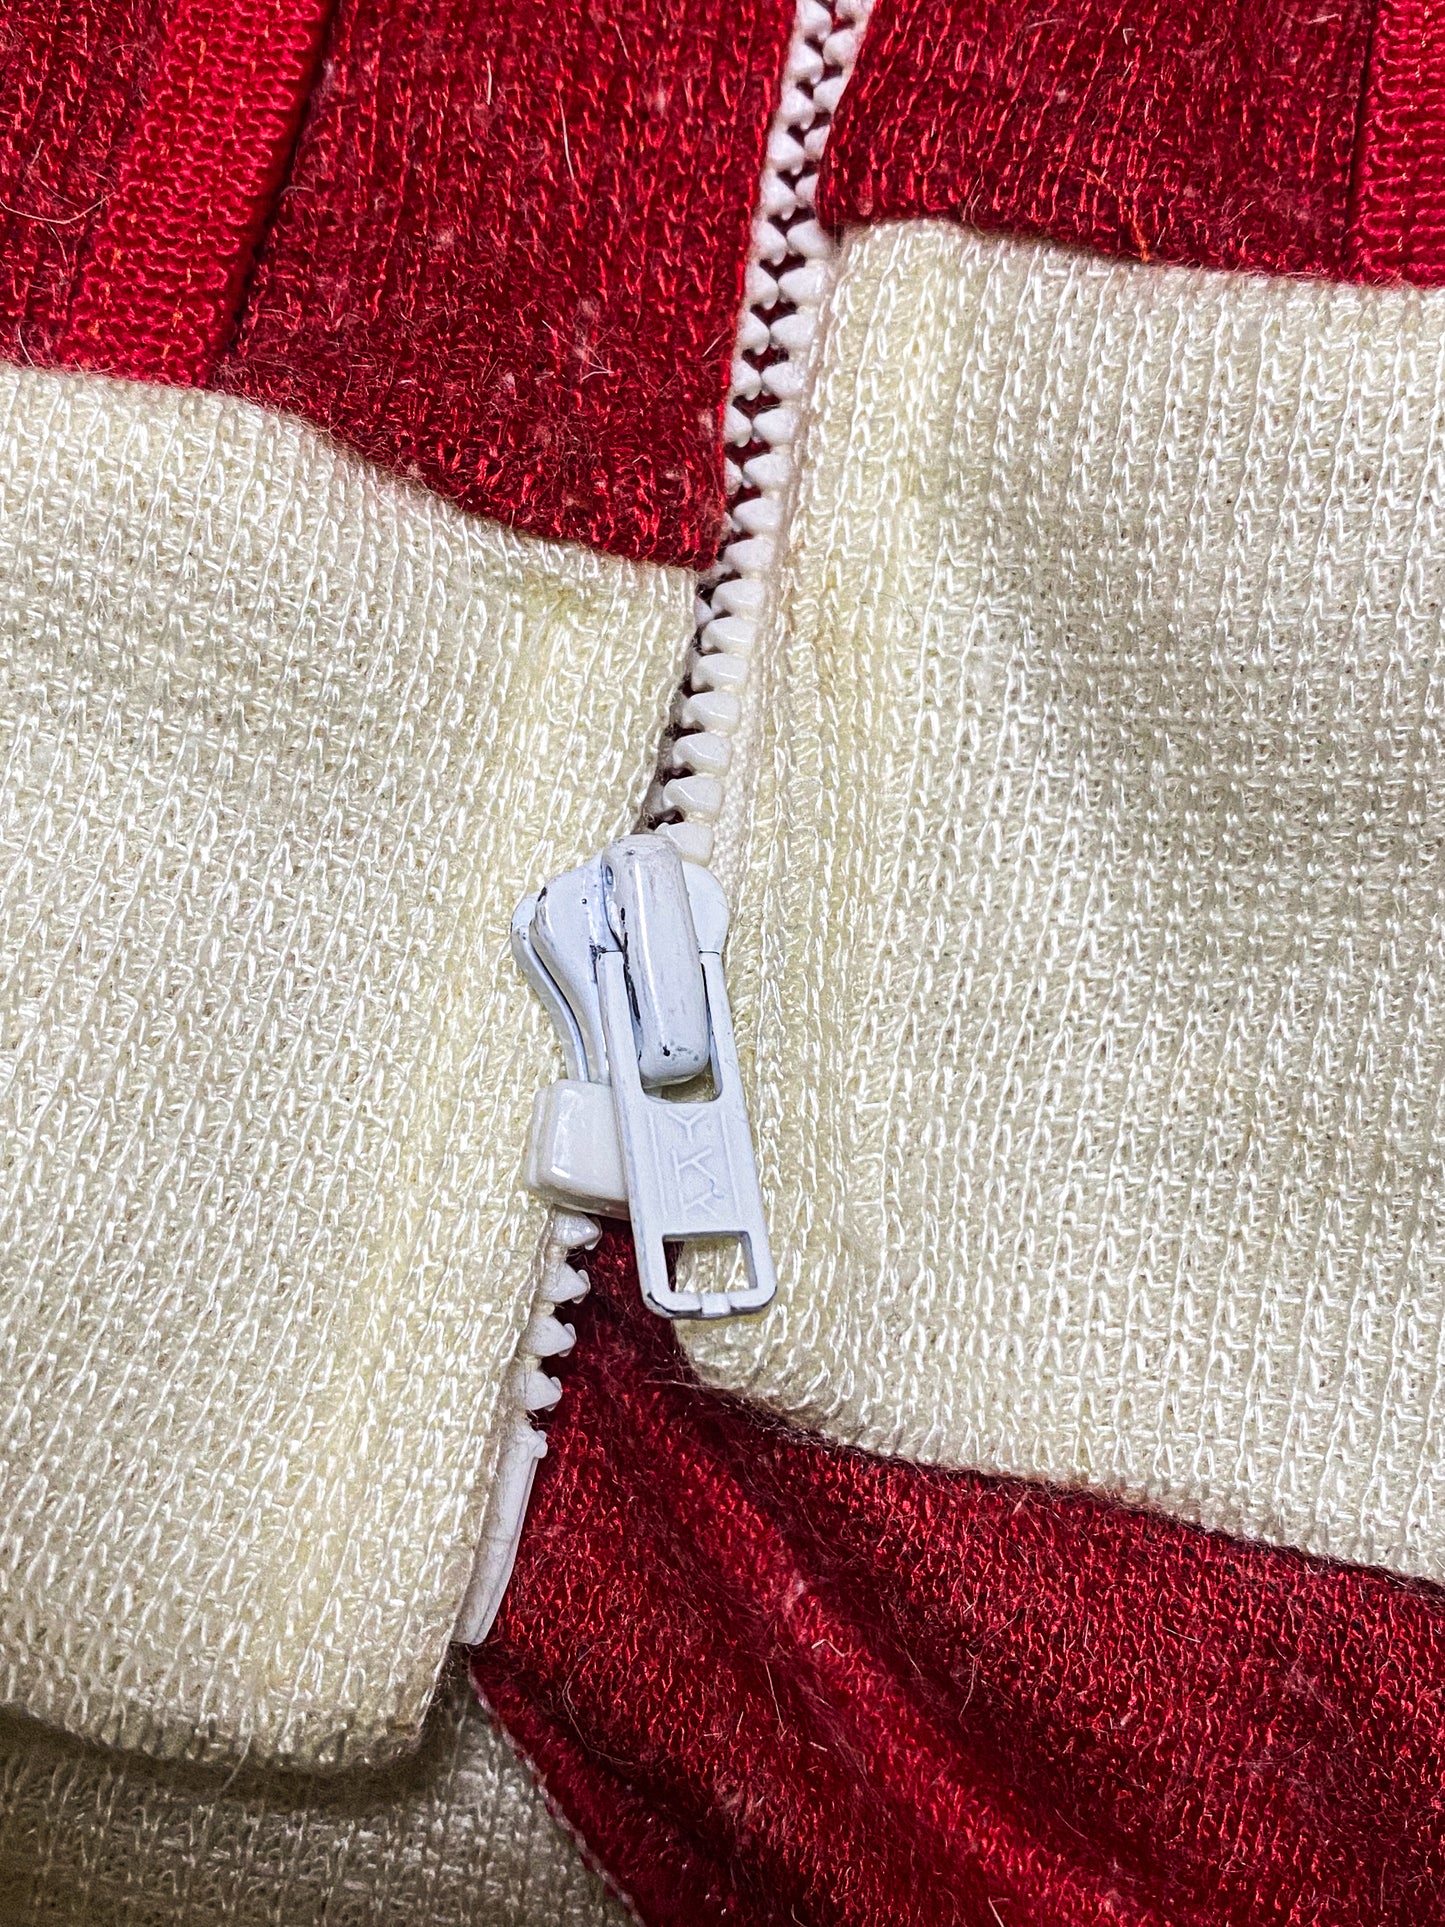 knit track jacket  vintage 80s